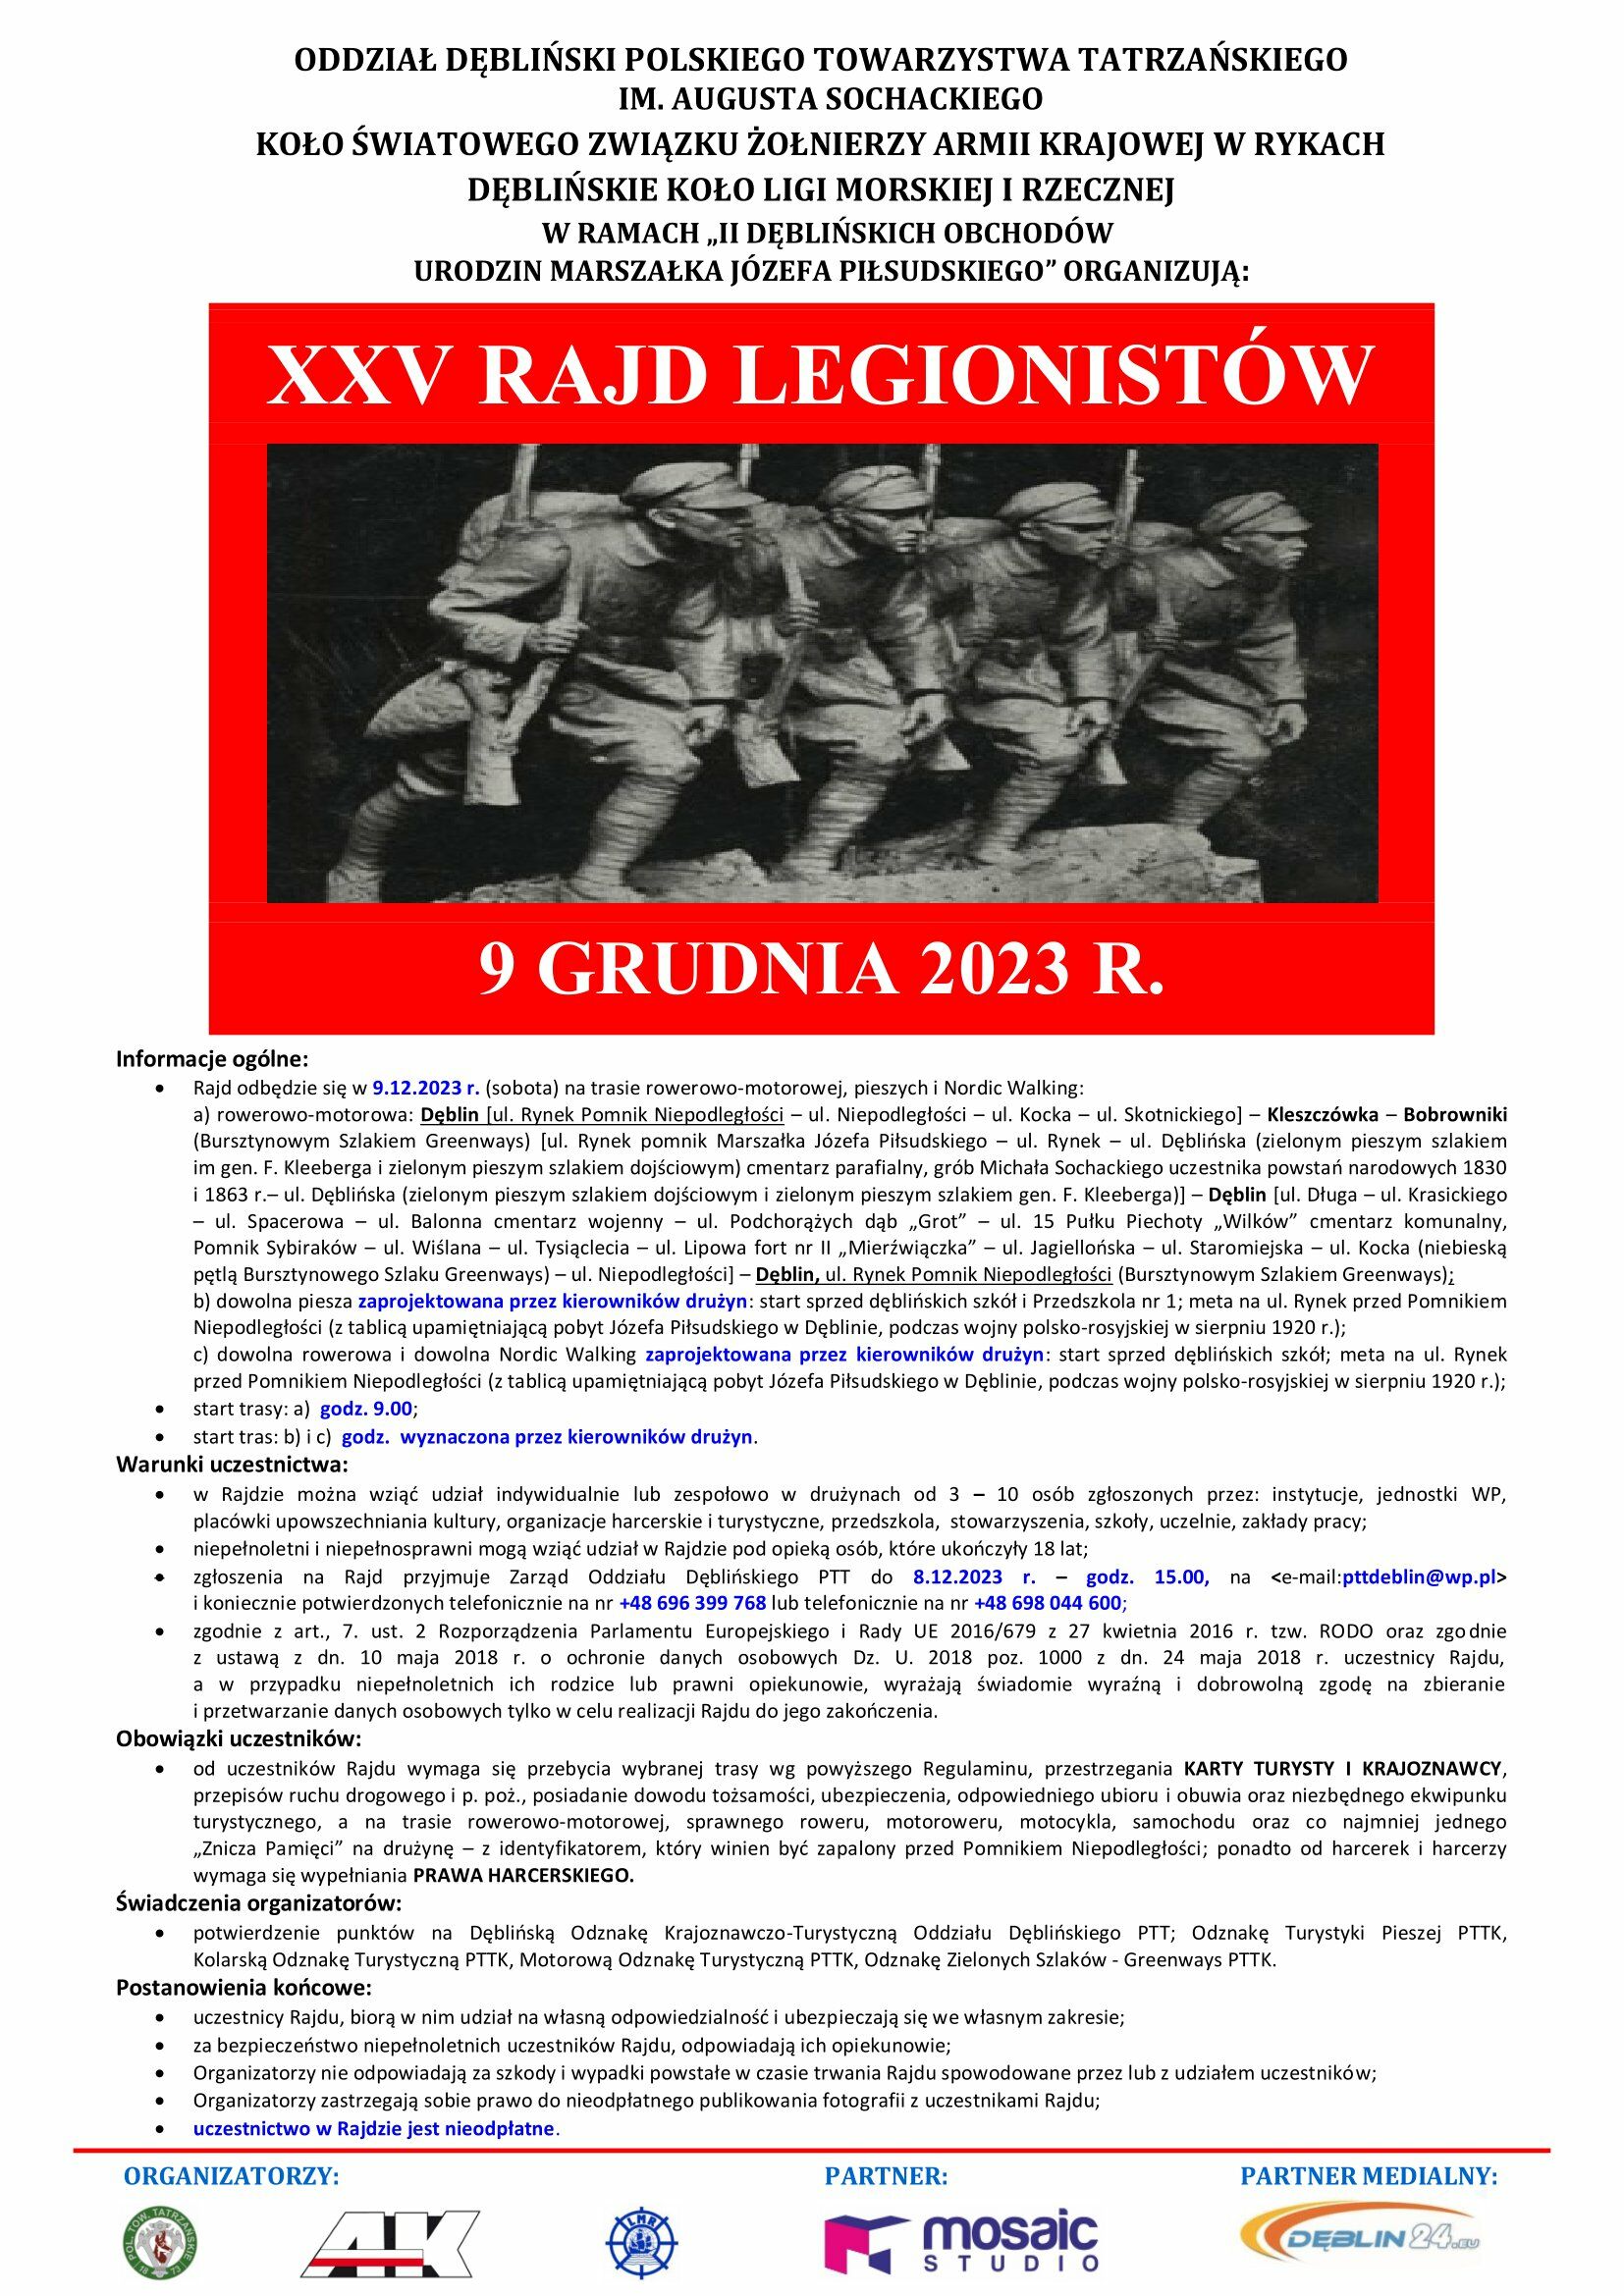 Plakat wydarzenia "XXV Rajd Legionistów" z datą 9 grudnia 2023 r. zawierający czarno-białe zdjęcie grupy żołnierzy w marszu. Informacje o organizatorach i partnerach poniżej.